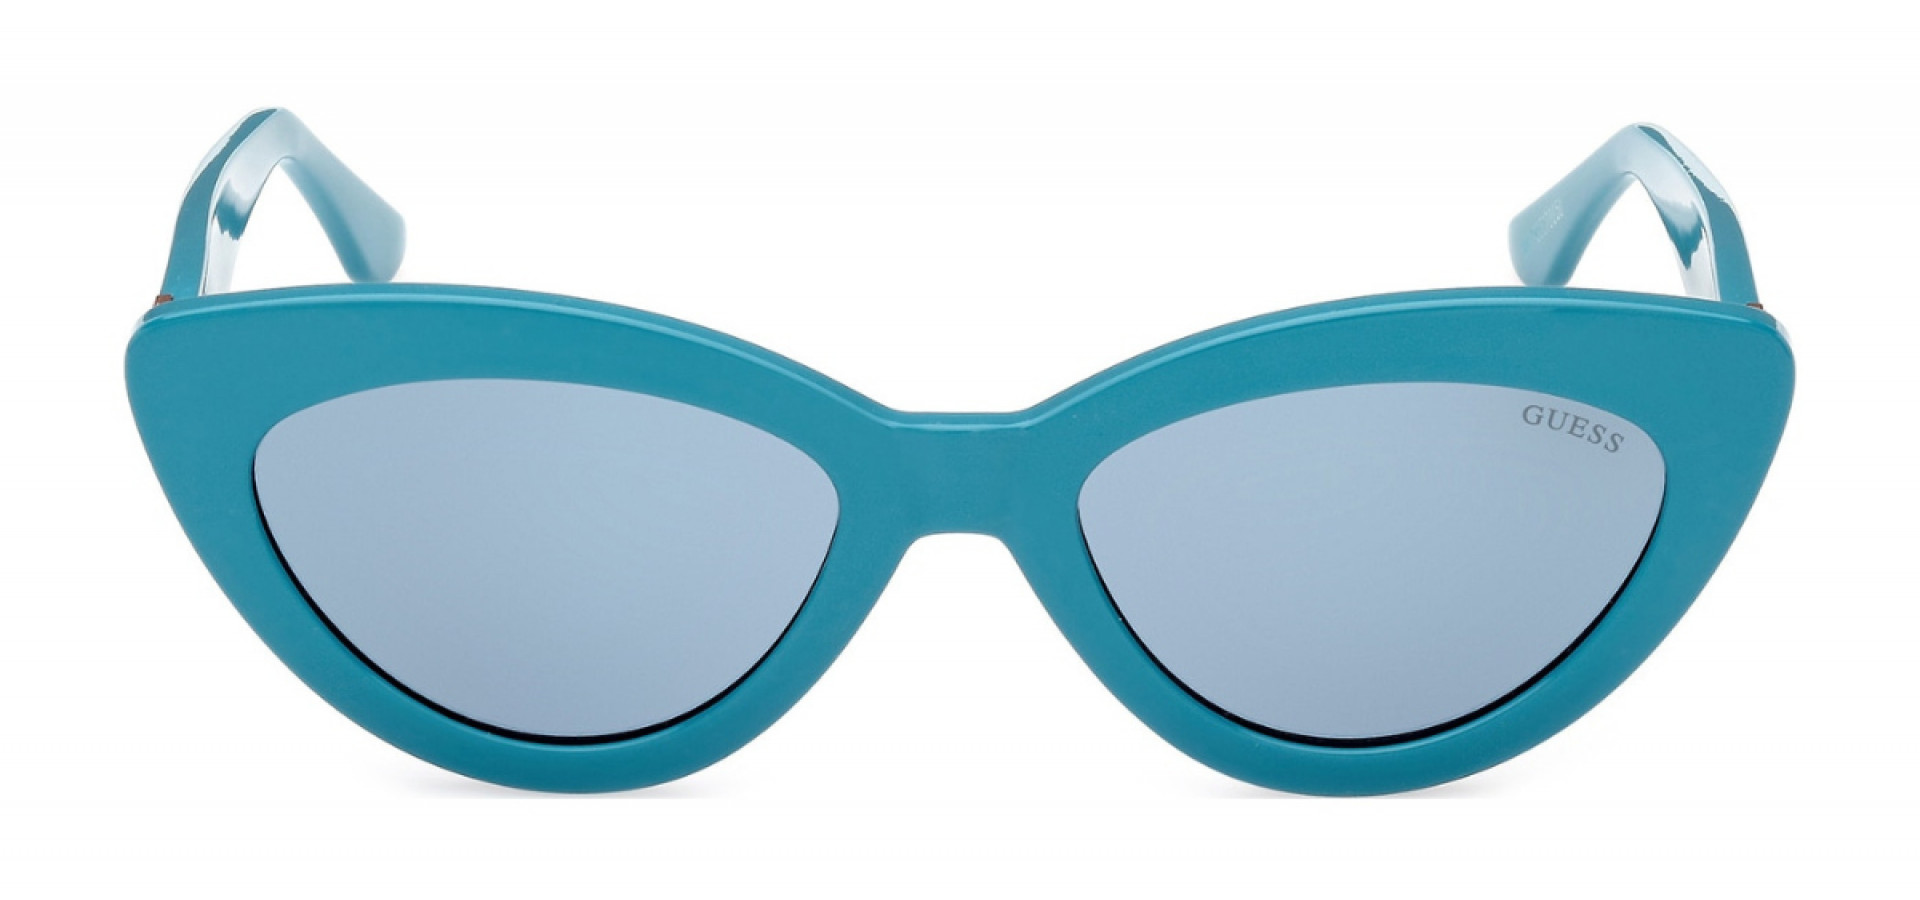 Sunčane naočale Guess GU7905 52 89V: Boja: Turquoise, Veličina: 52-19-145, Spol: ženske, Materijal: acetat